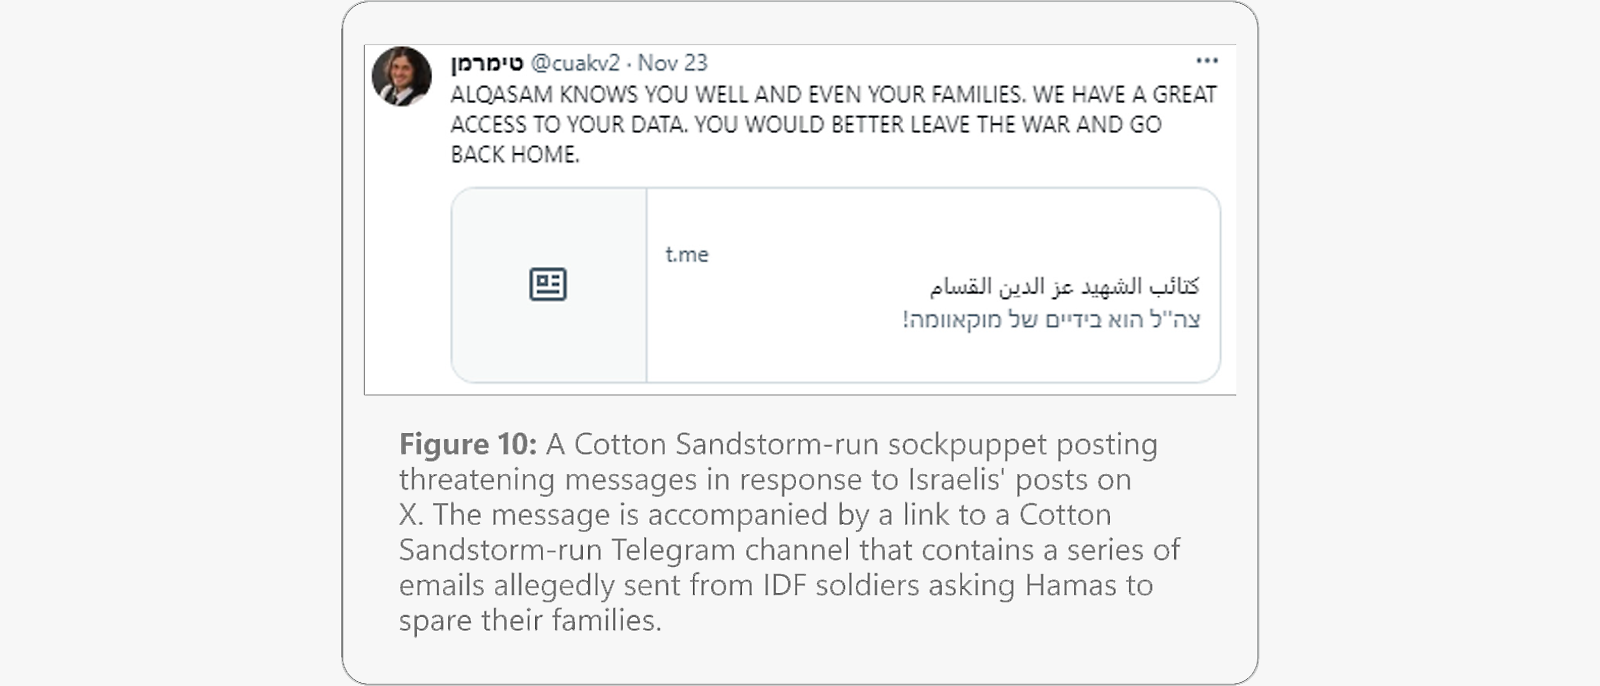 Mensaje amenazador de una supuesta identidad falsa de Cotton Sandstorm, en el que se hace referencia al acceso a datos personales y se anima a abandonar la guerra.